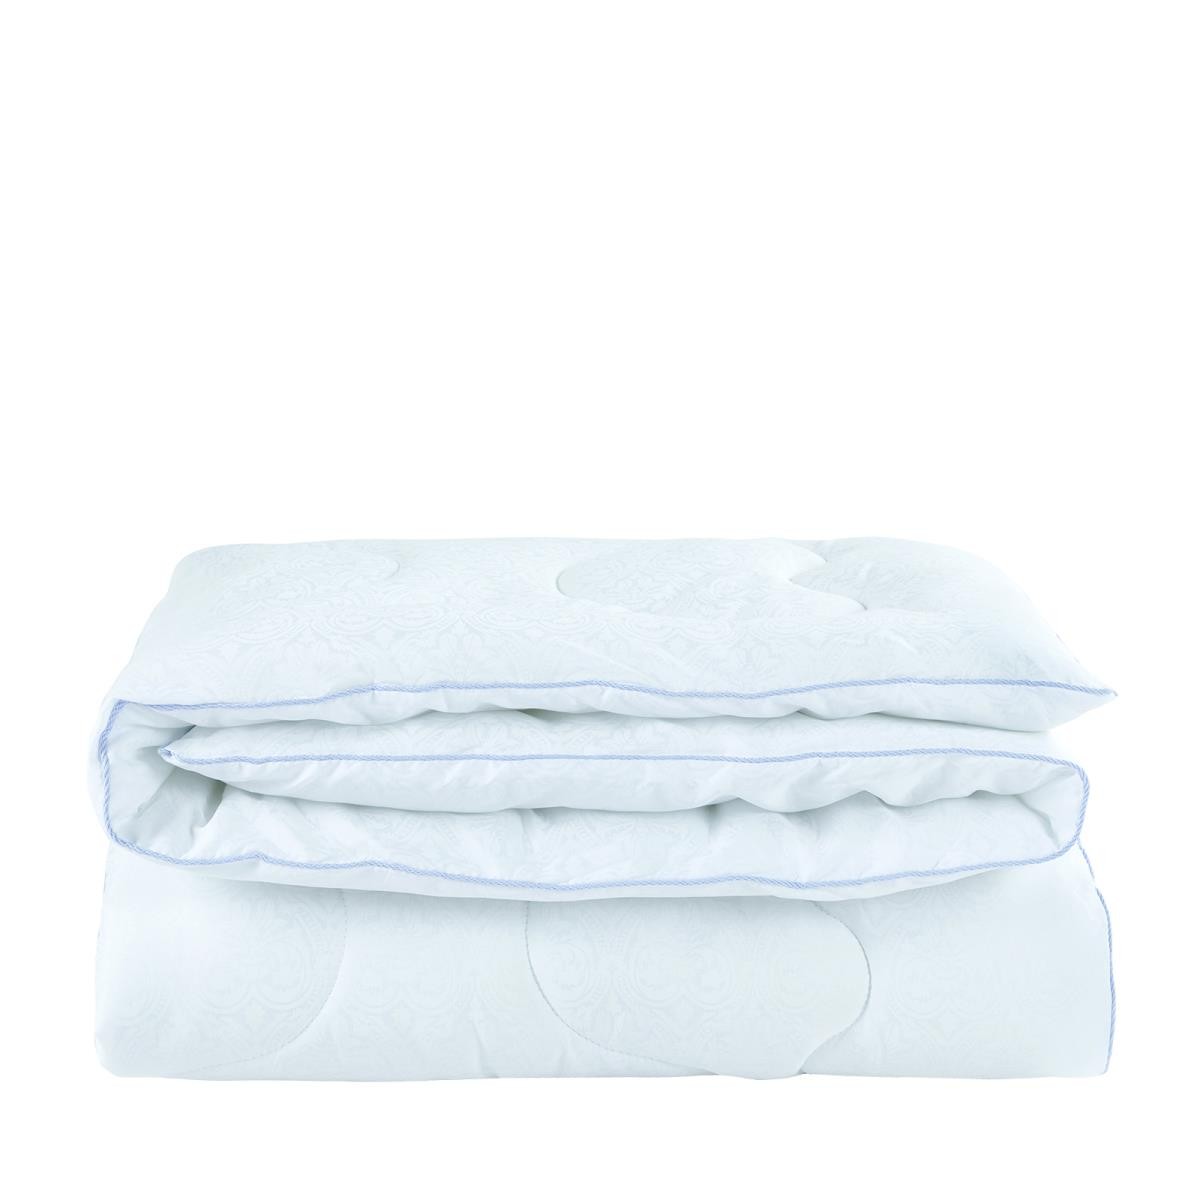 Одеяло Joandra (210х205 см), размер 210х205 см mcr782484 Одеяло Joandra (210х205 см) - фото 1